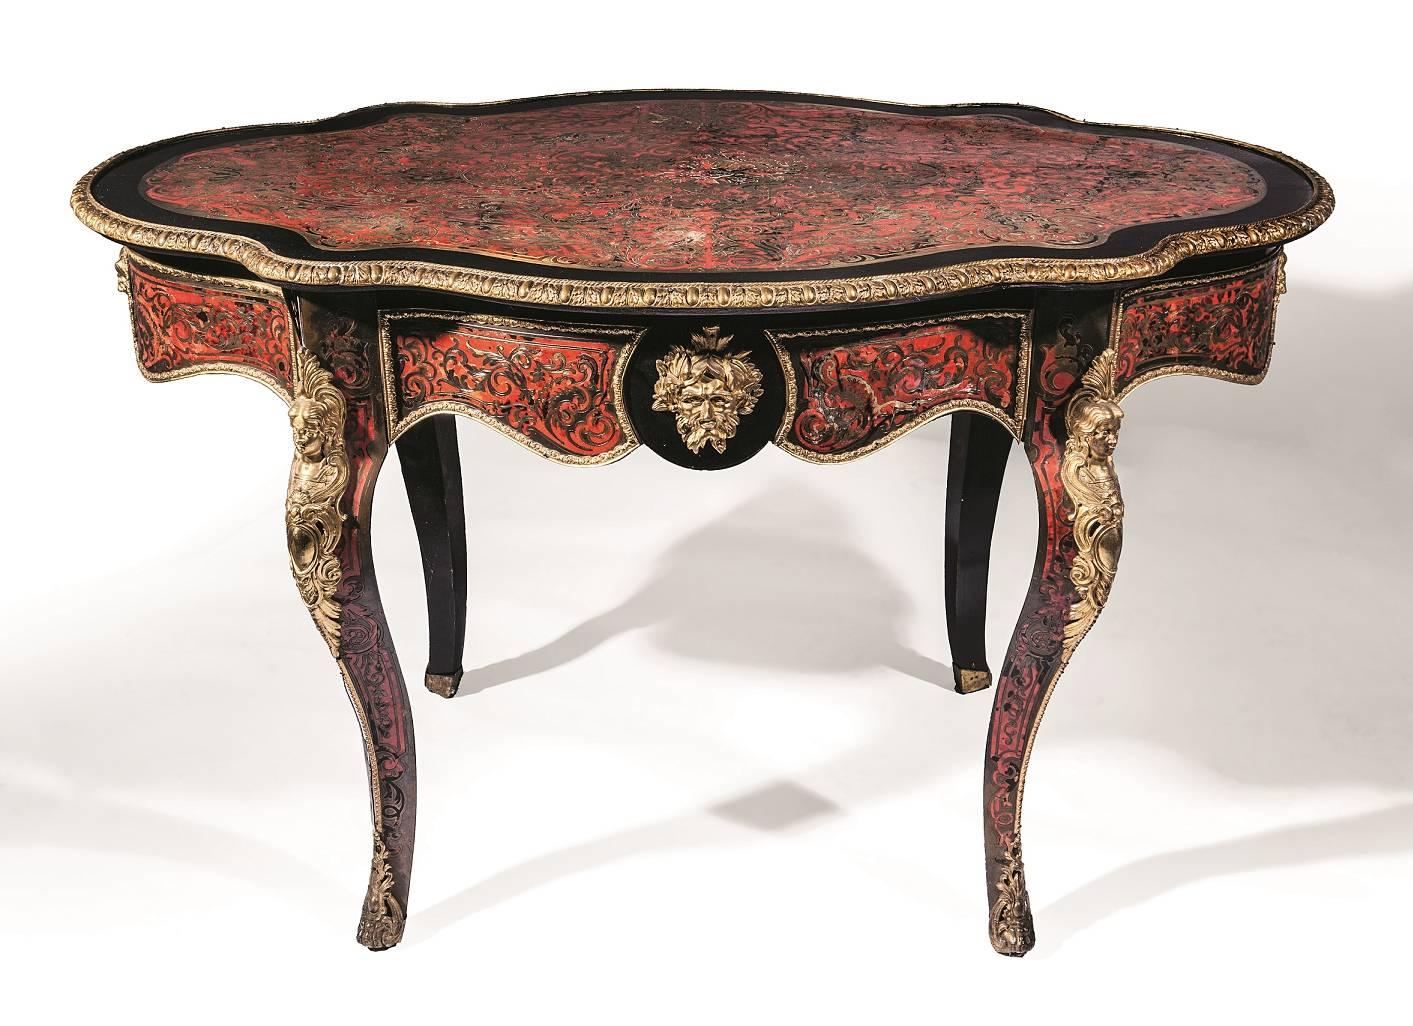 Cette table raffinée est fabriquée en bois ébonisé et présente des montures en bronze doré et une marqueterie de style Boulle. La table est de forme ovale et incurvée, et est incrustée de marqueterie sur le plateau, le pourtour et la longueur des